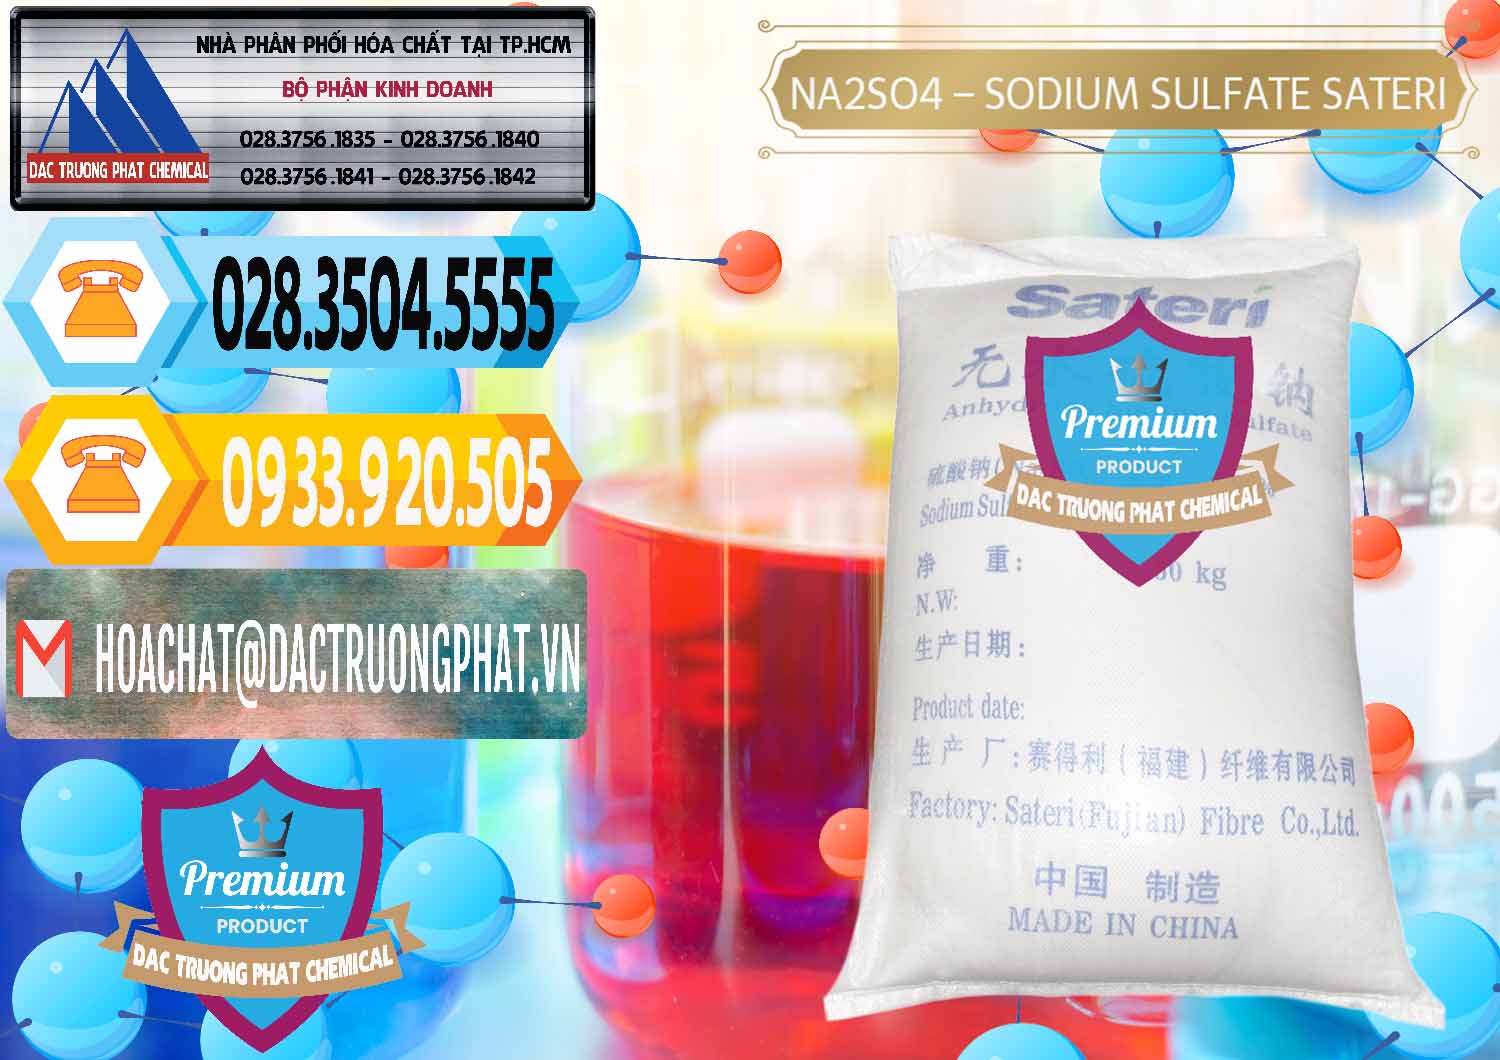 Cty chuyên bán - cung ứng Sodium Sulphate - Muối Sunfat Na2SO4 Sateri Trung Quốc China - 0100 - Nhà cung cấp và nhập khẩu hóa chất tại TP.HCM - hoachattayrua.net